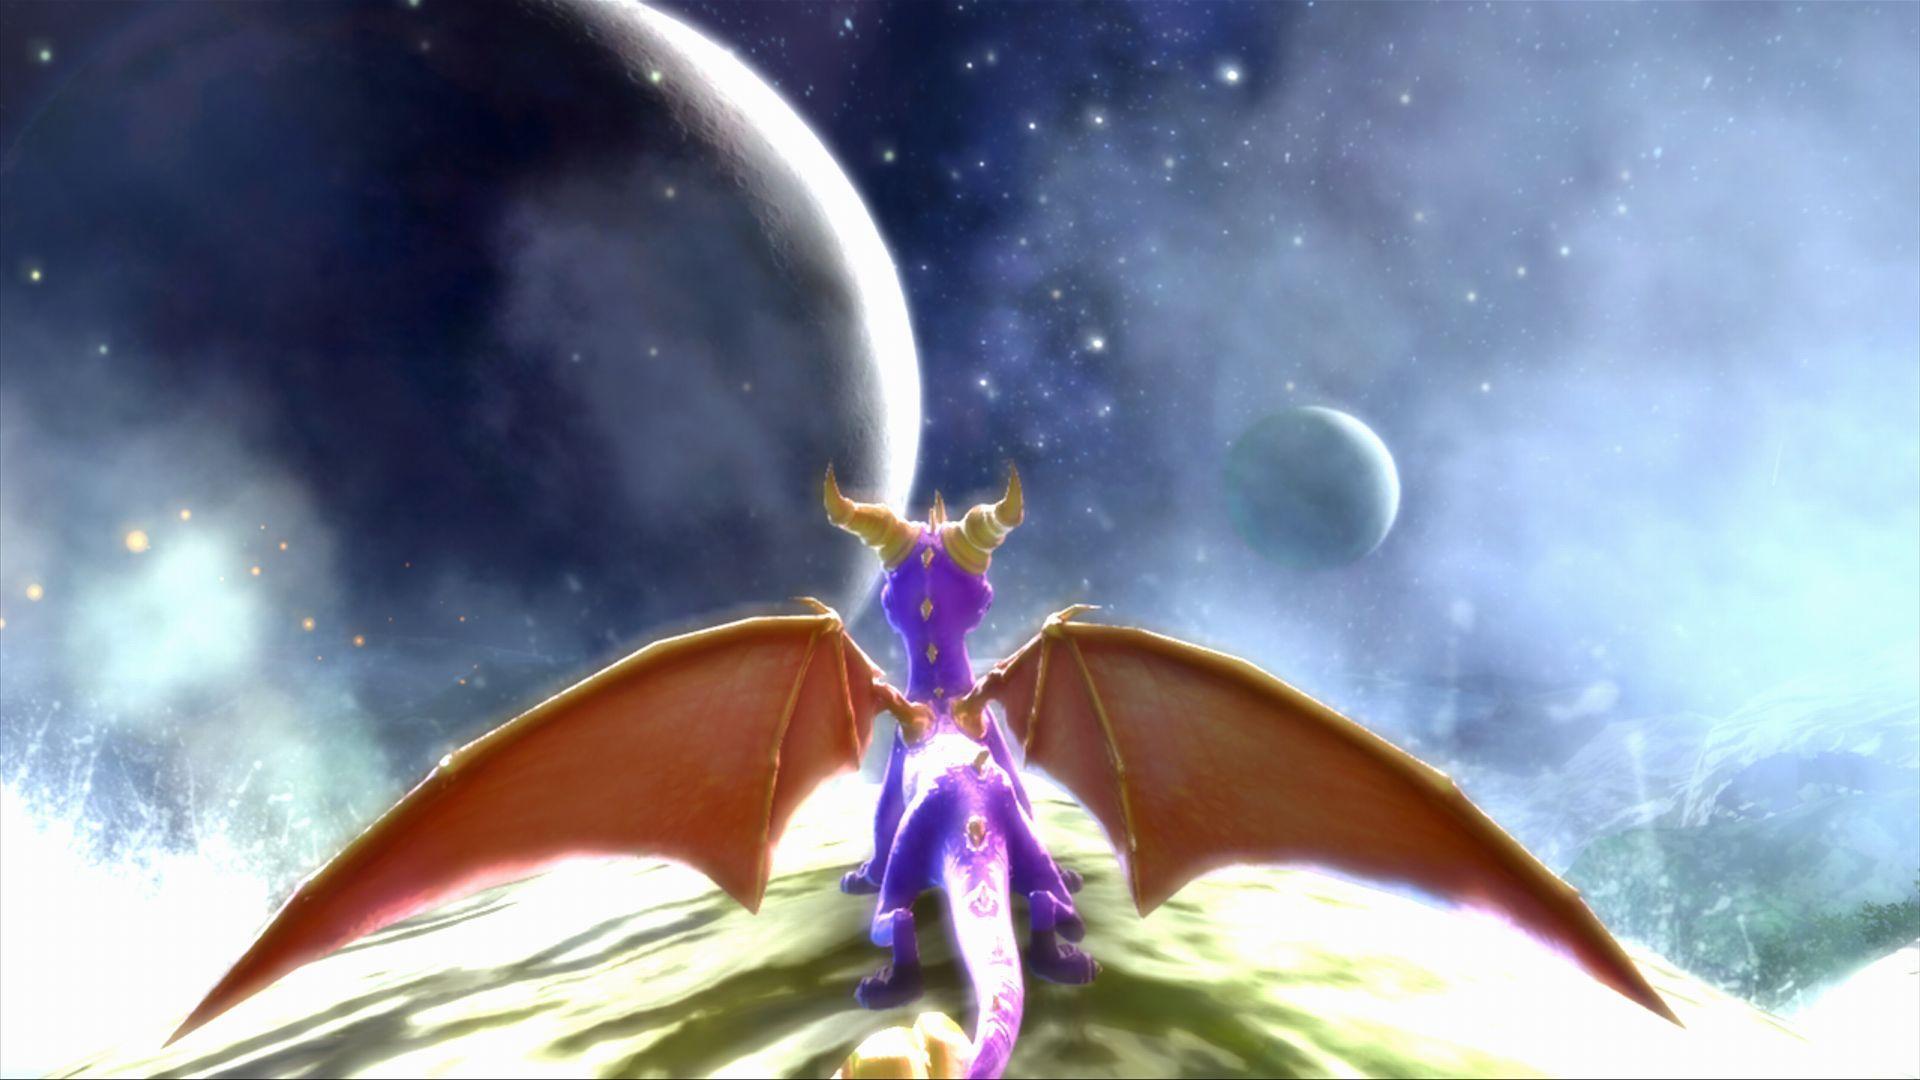 darkSpyro Legend of Spyro: Dawn of the Dragon